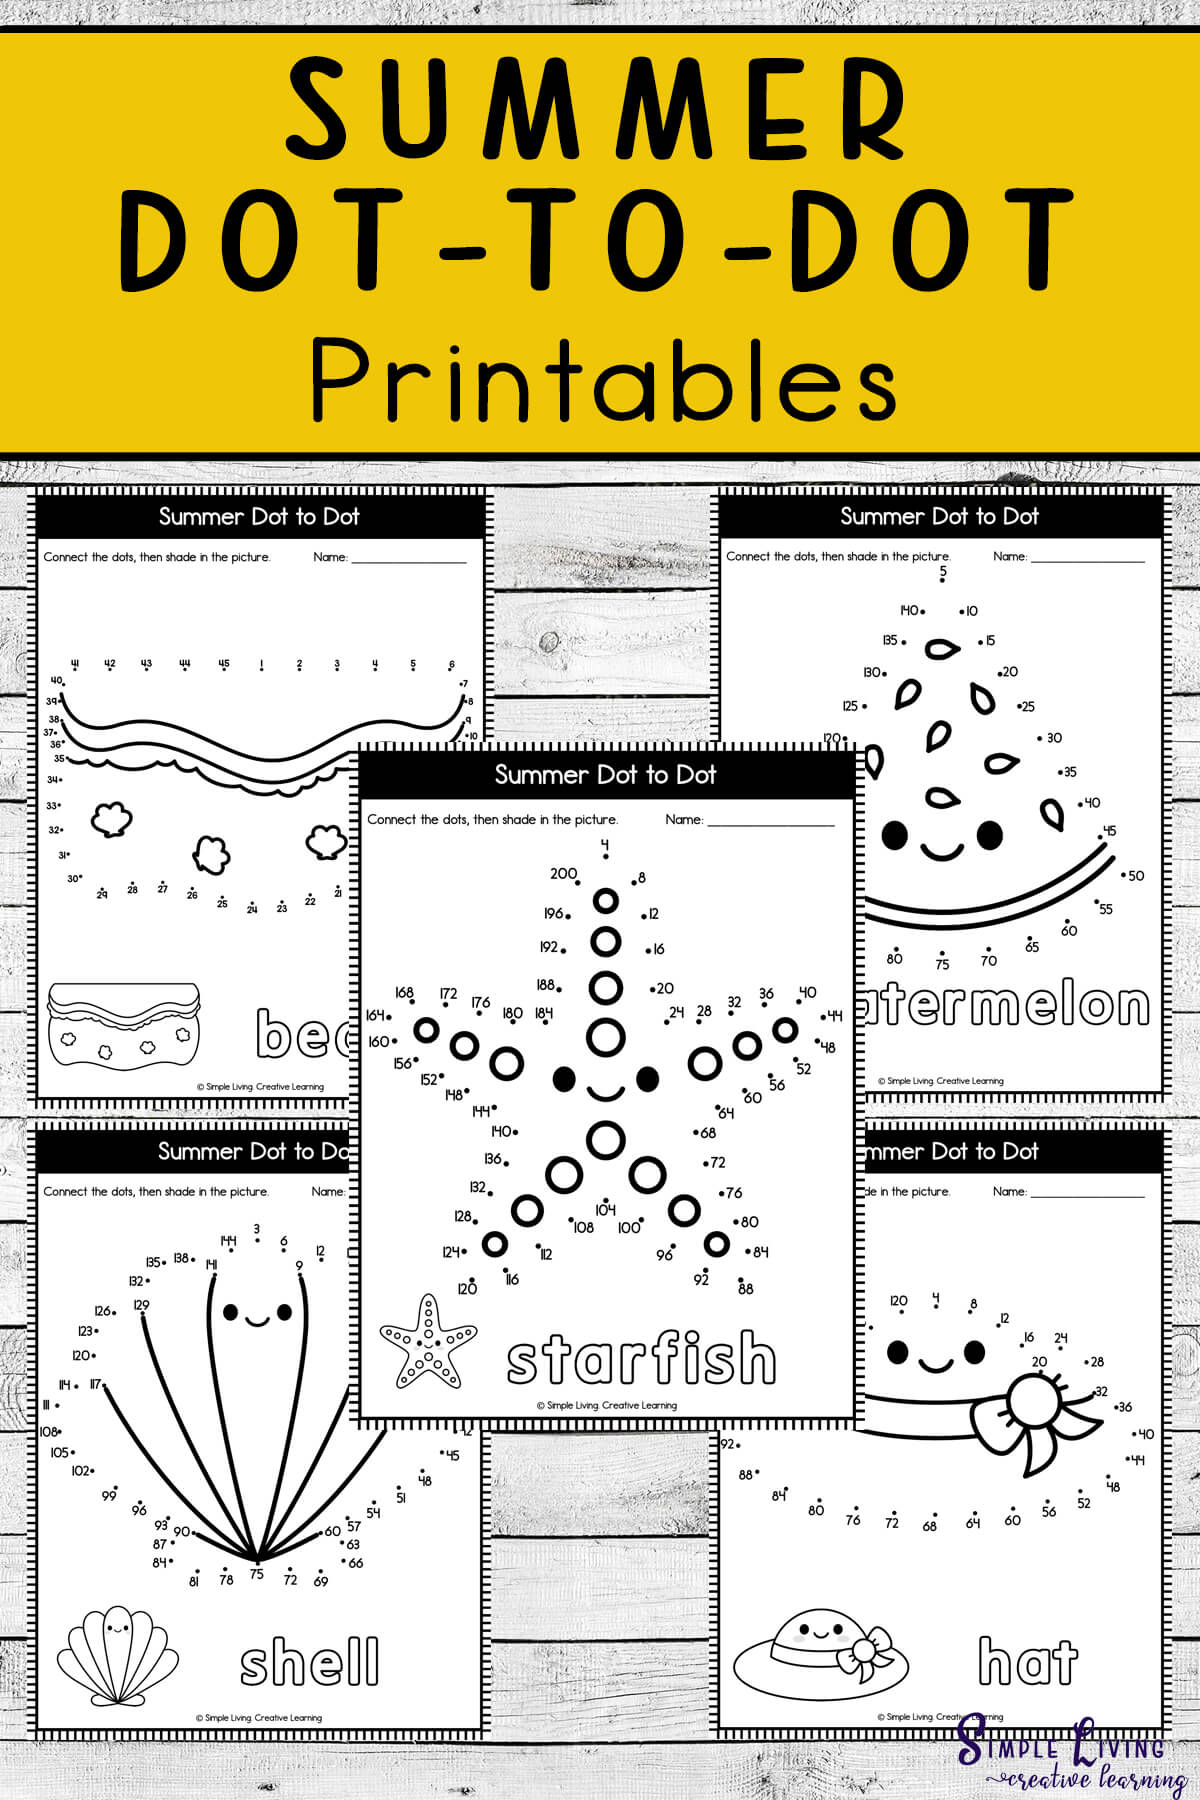 Summer Dot-to-Dot Printables